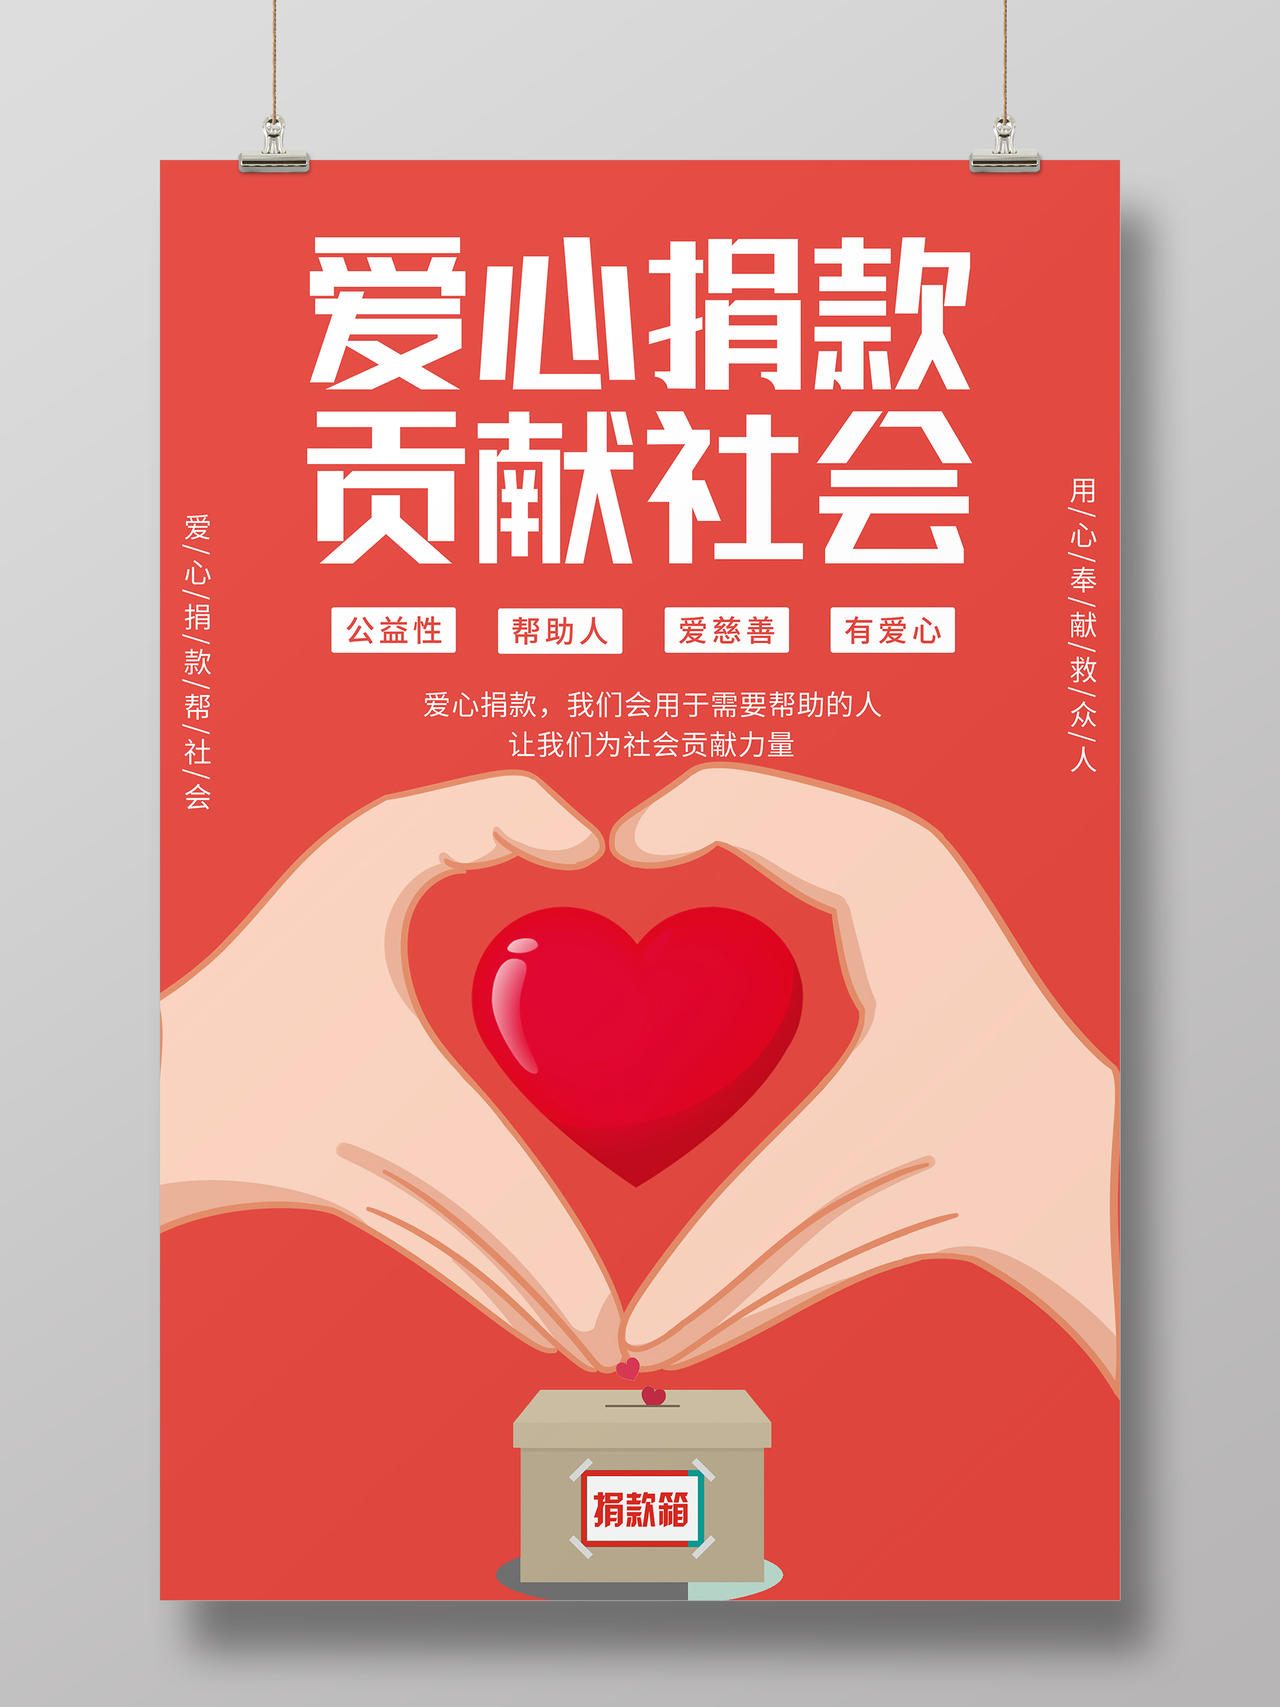 简约红色爱心捐款贡献社会公益宣传海报